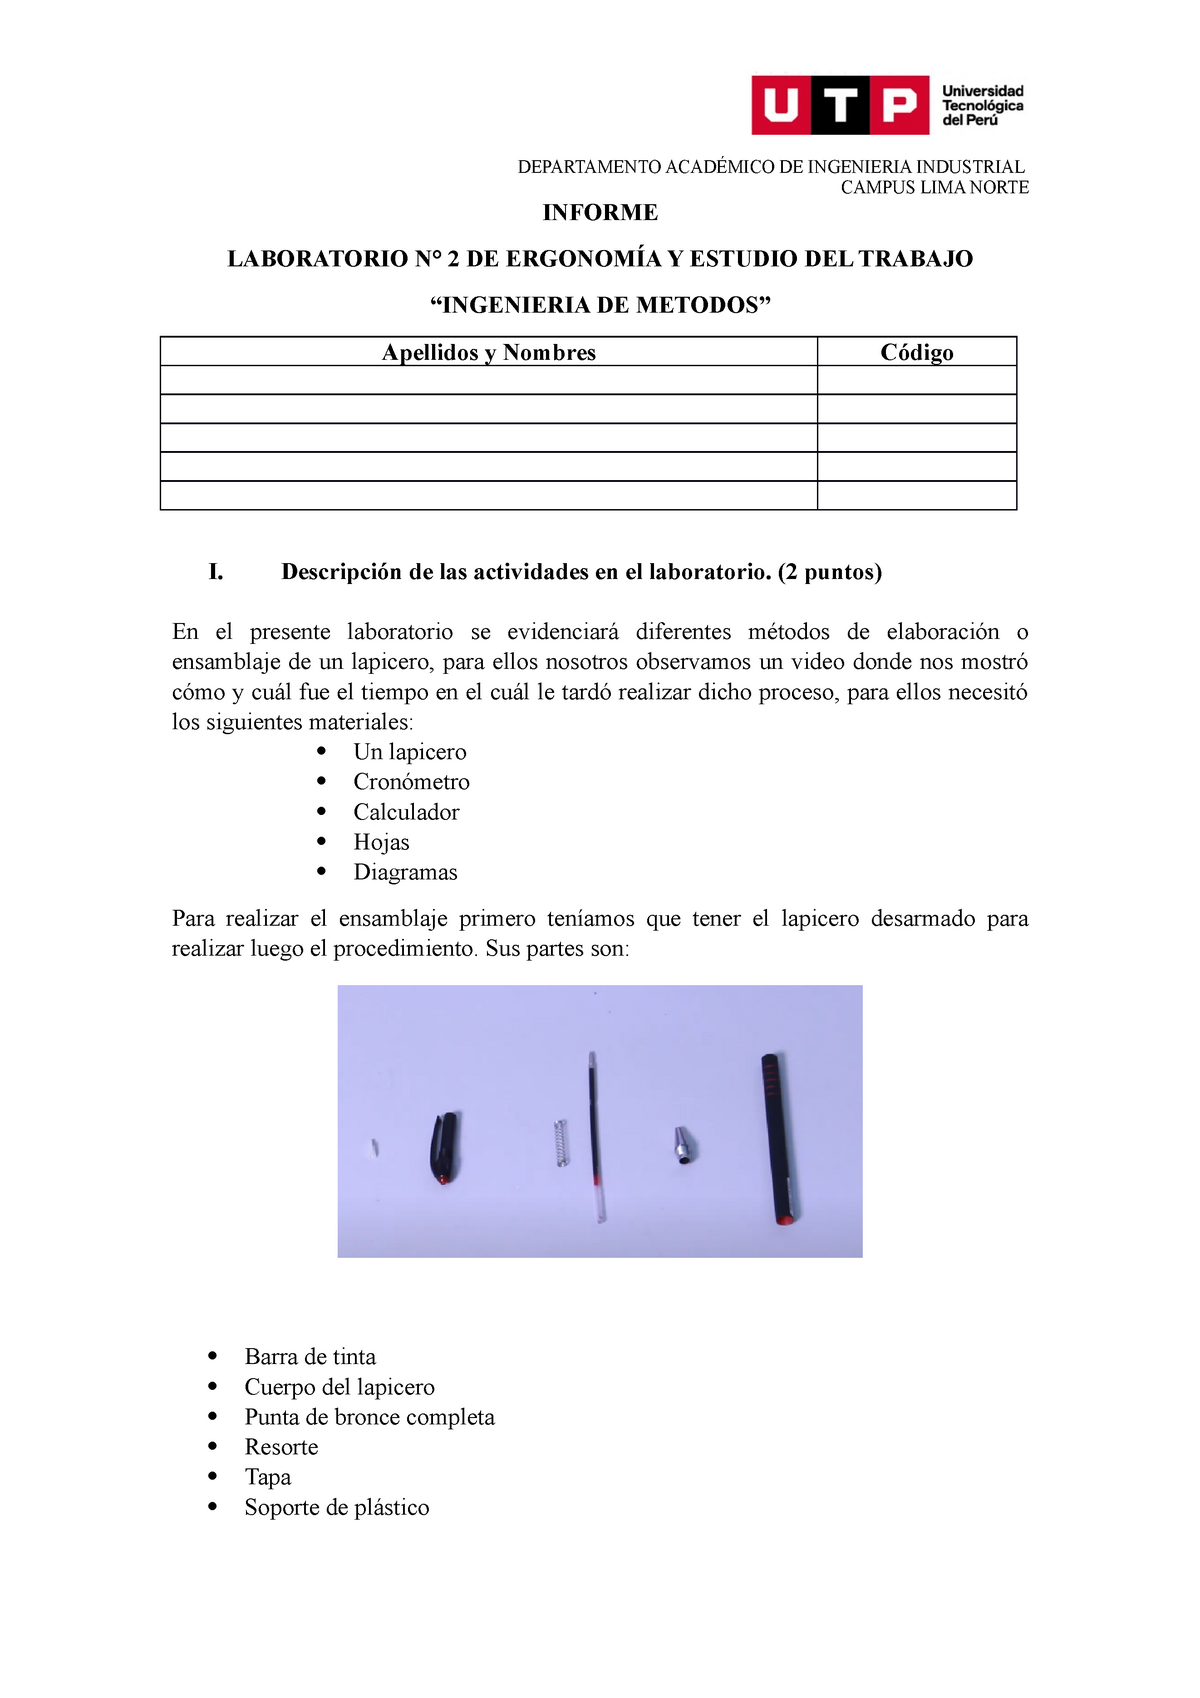 Informe LAB N°2. Ingenieria DE Metodos 06-05-2021-1 - CAMPUS LIMA NORTE  INFORME LABORATORIO N° 2 DE - Studocu